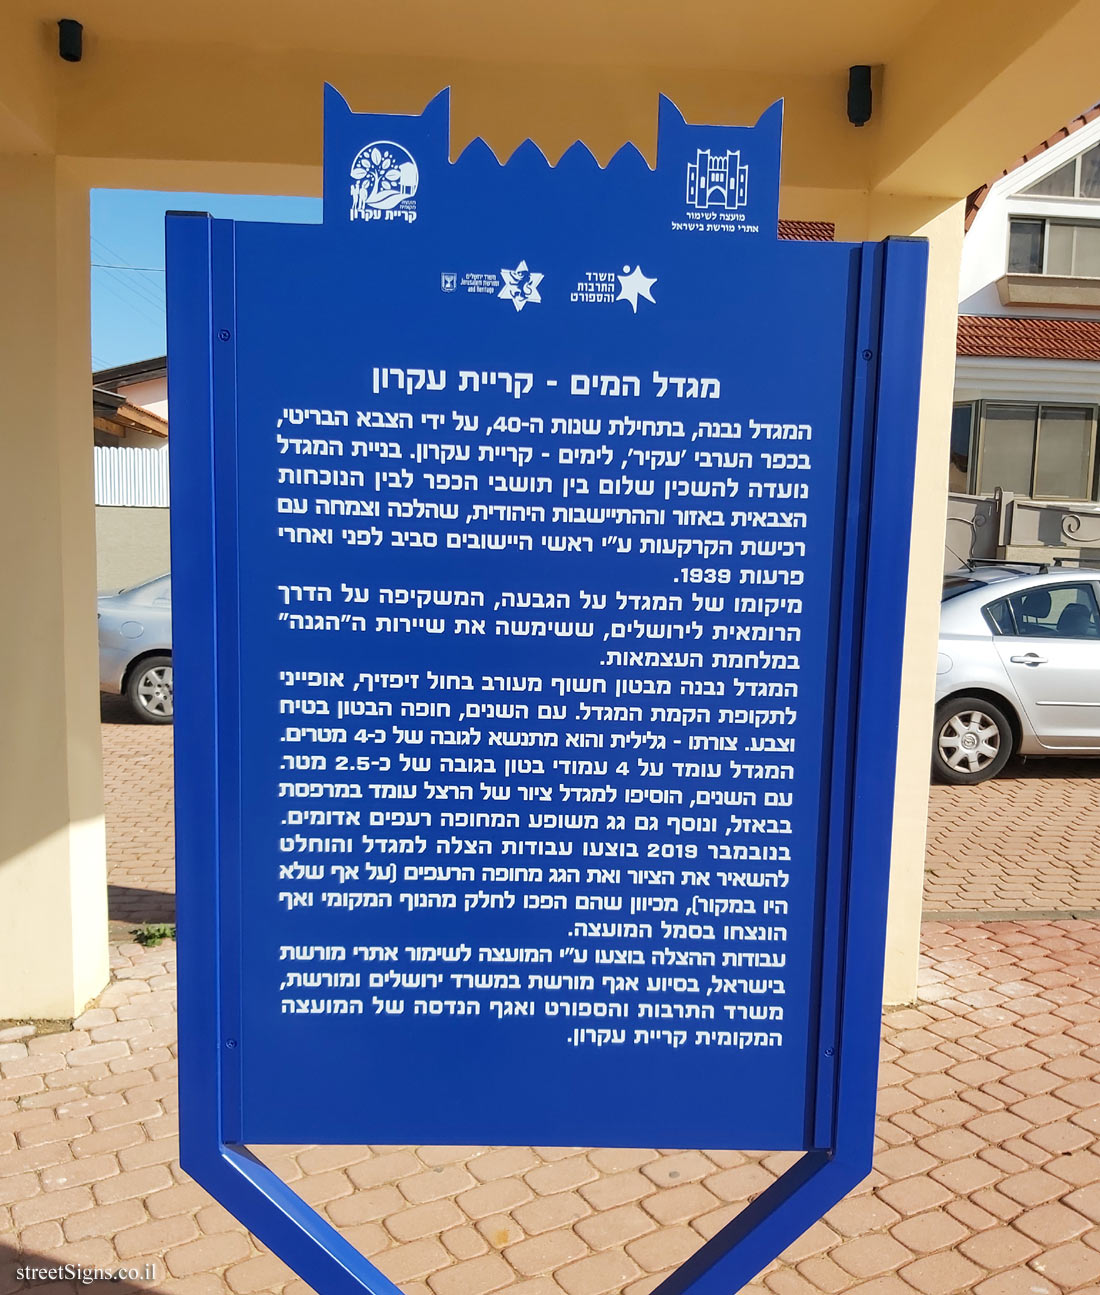 Kiryat Ekron - Heritage Sites in Israel - The Water tower